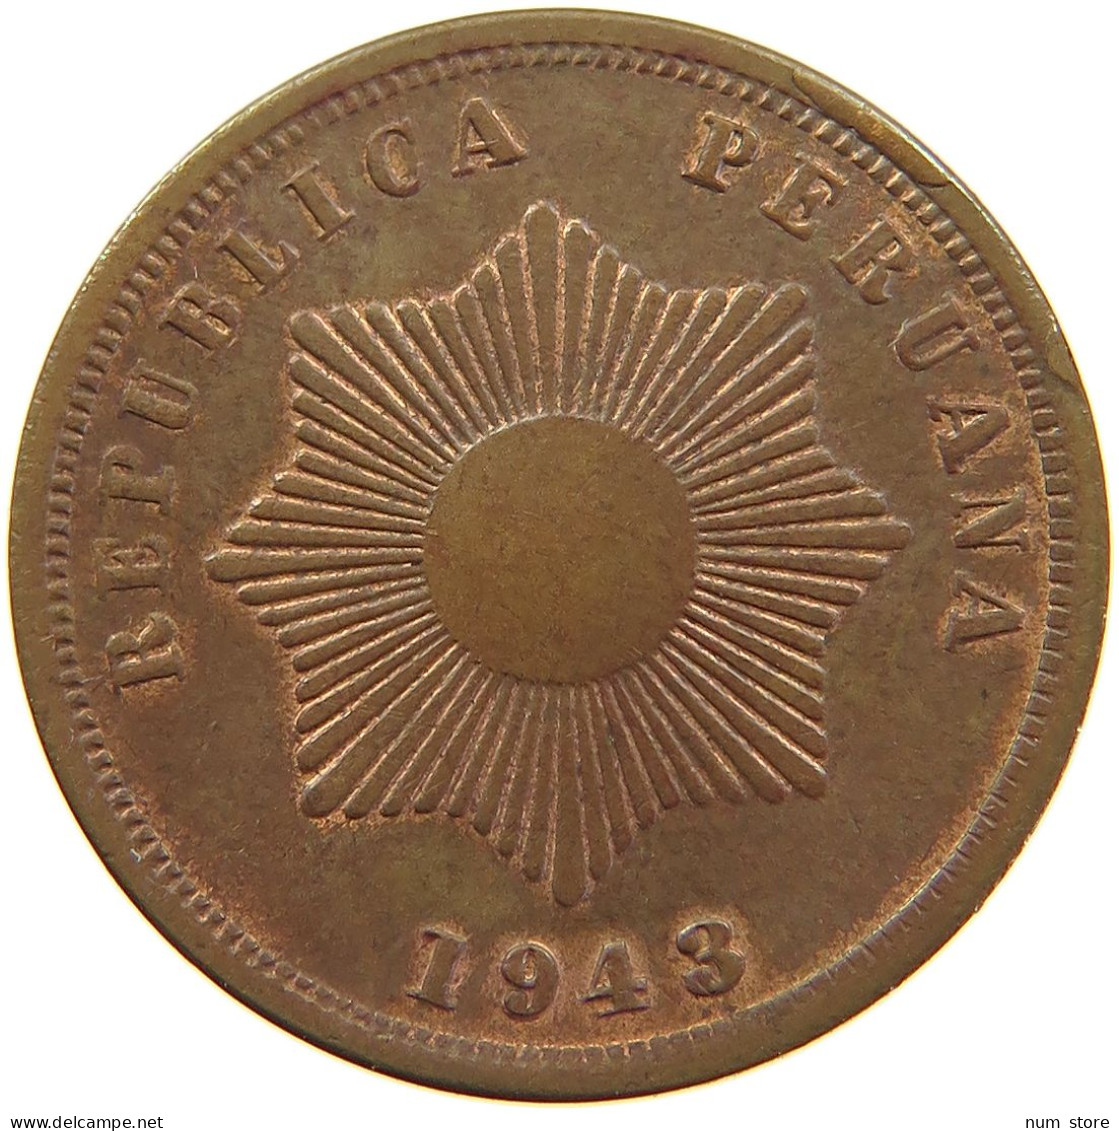 PERU 2 CENTAVOS 1943 UNC #t030 0203 - Peru